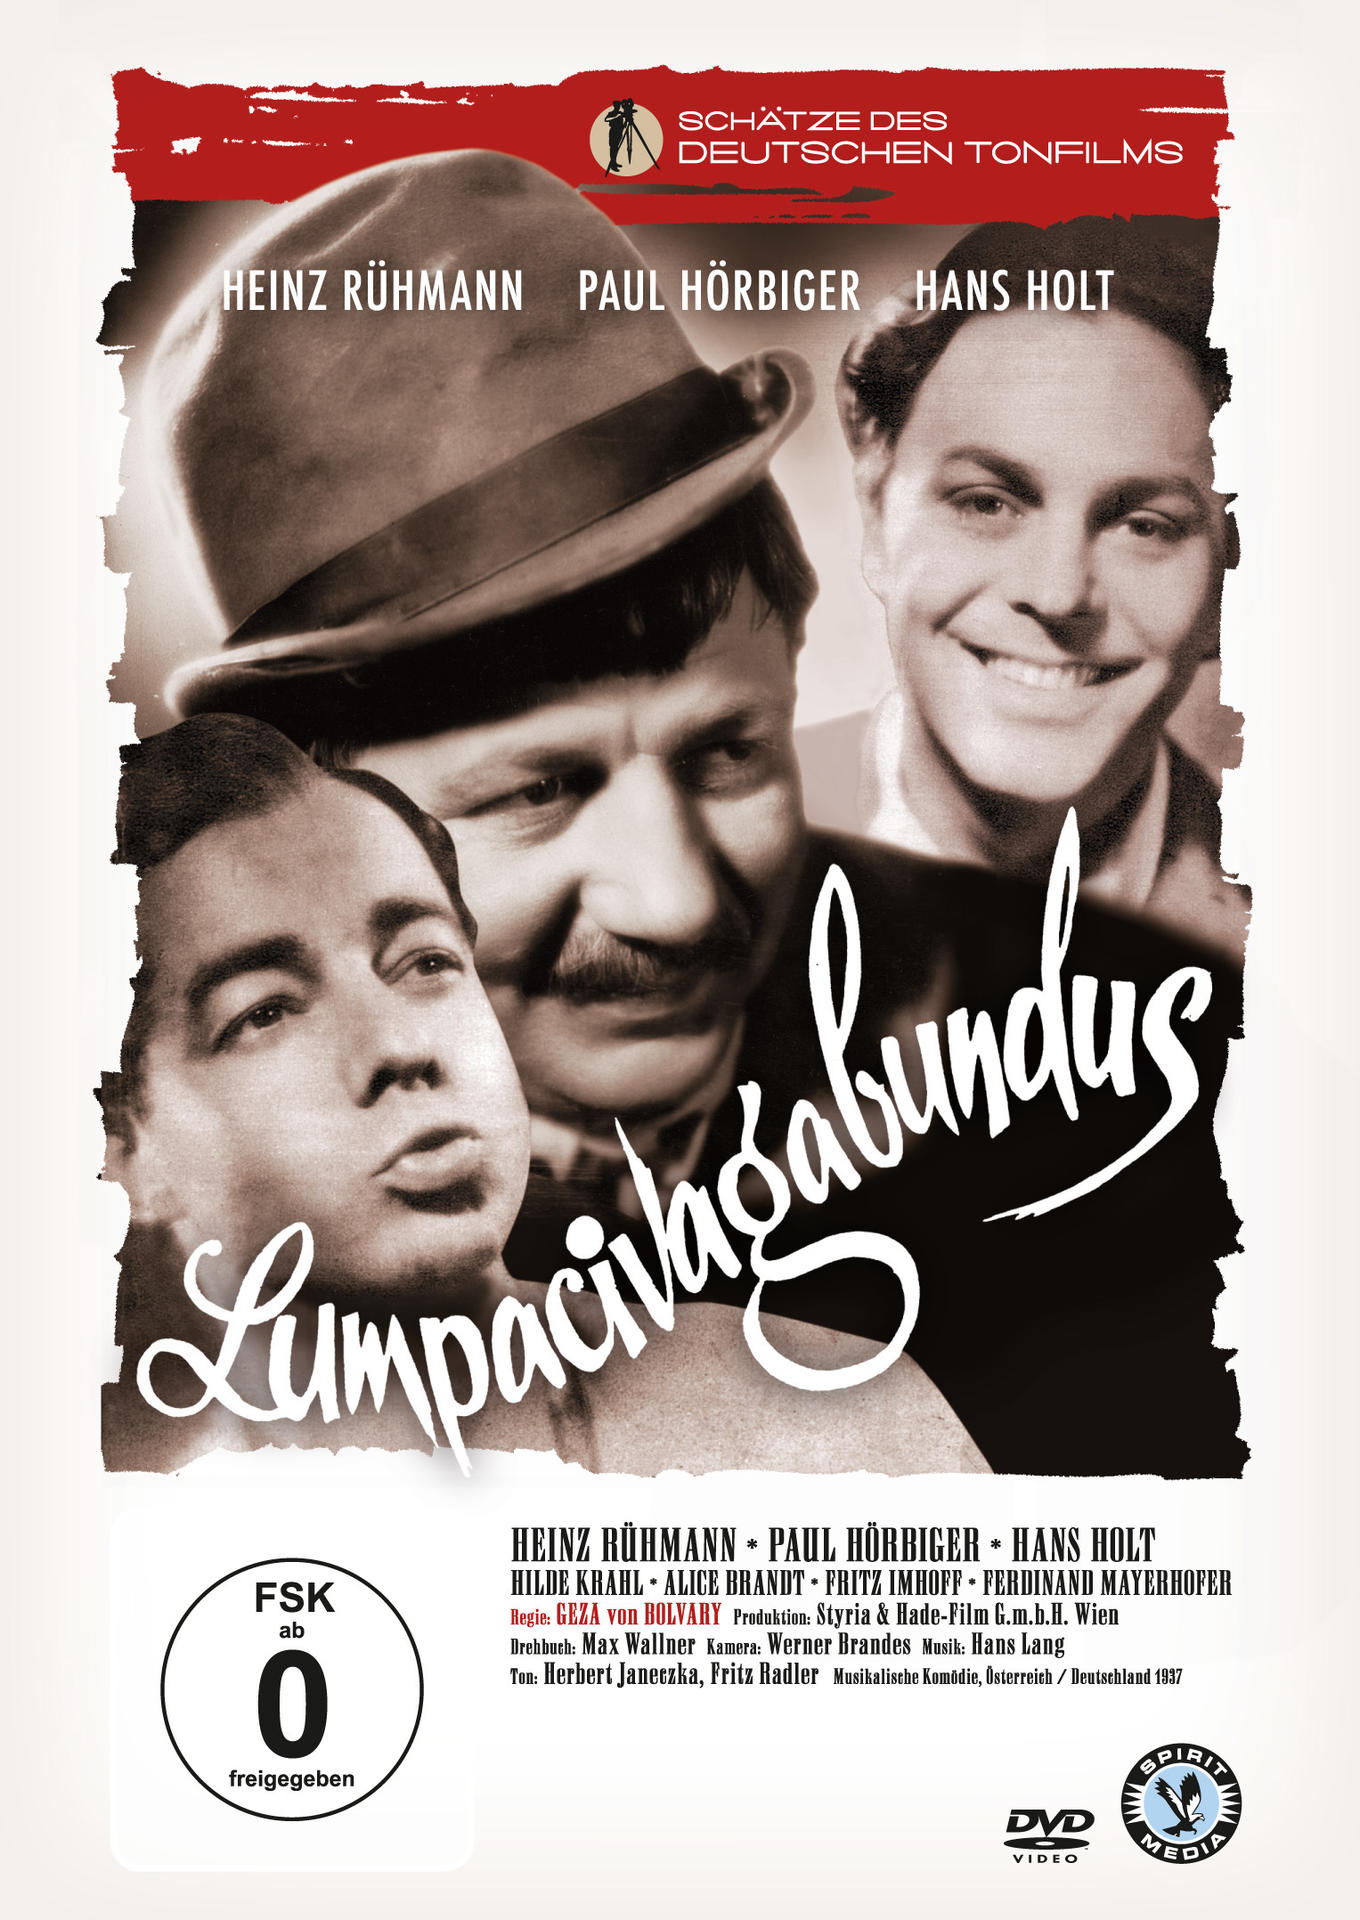 Lumpacivagabundus DVD